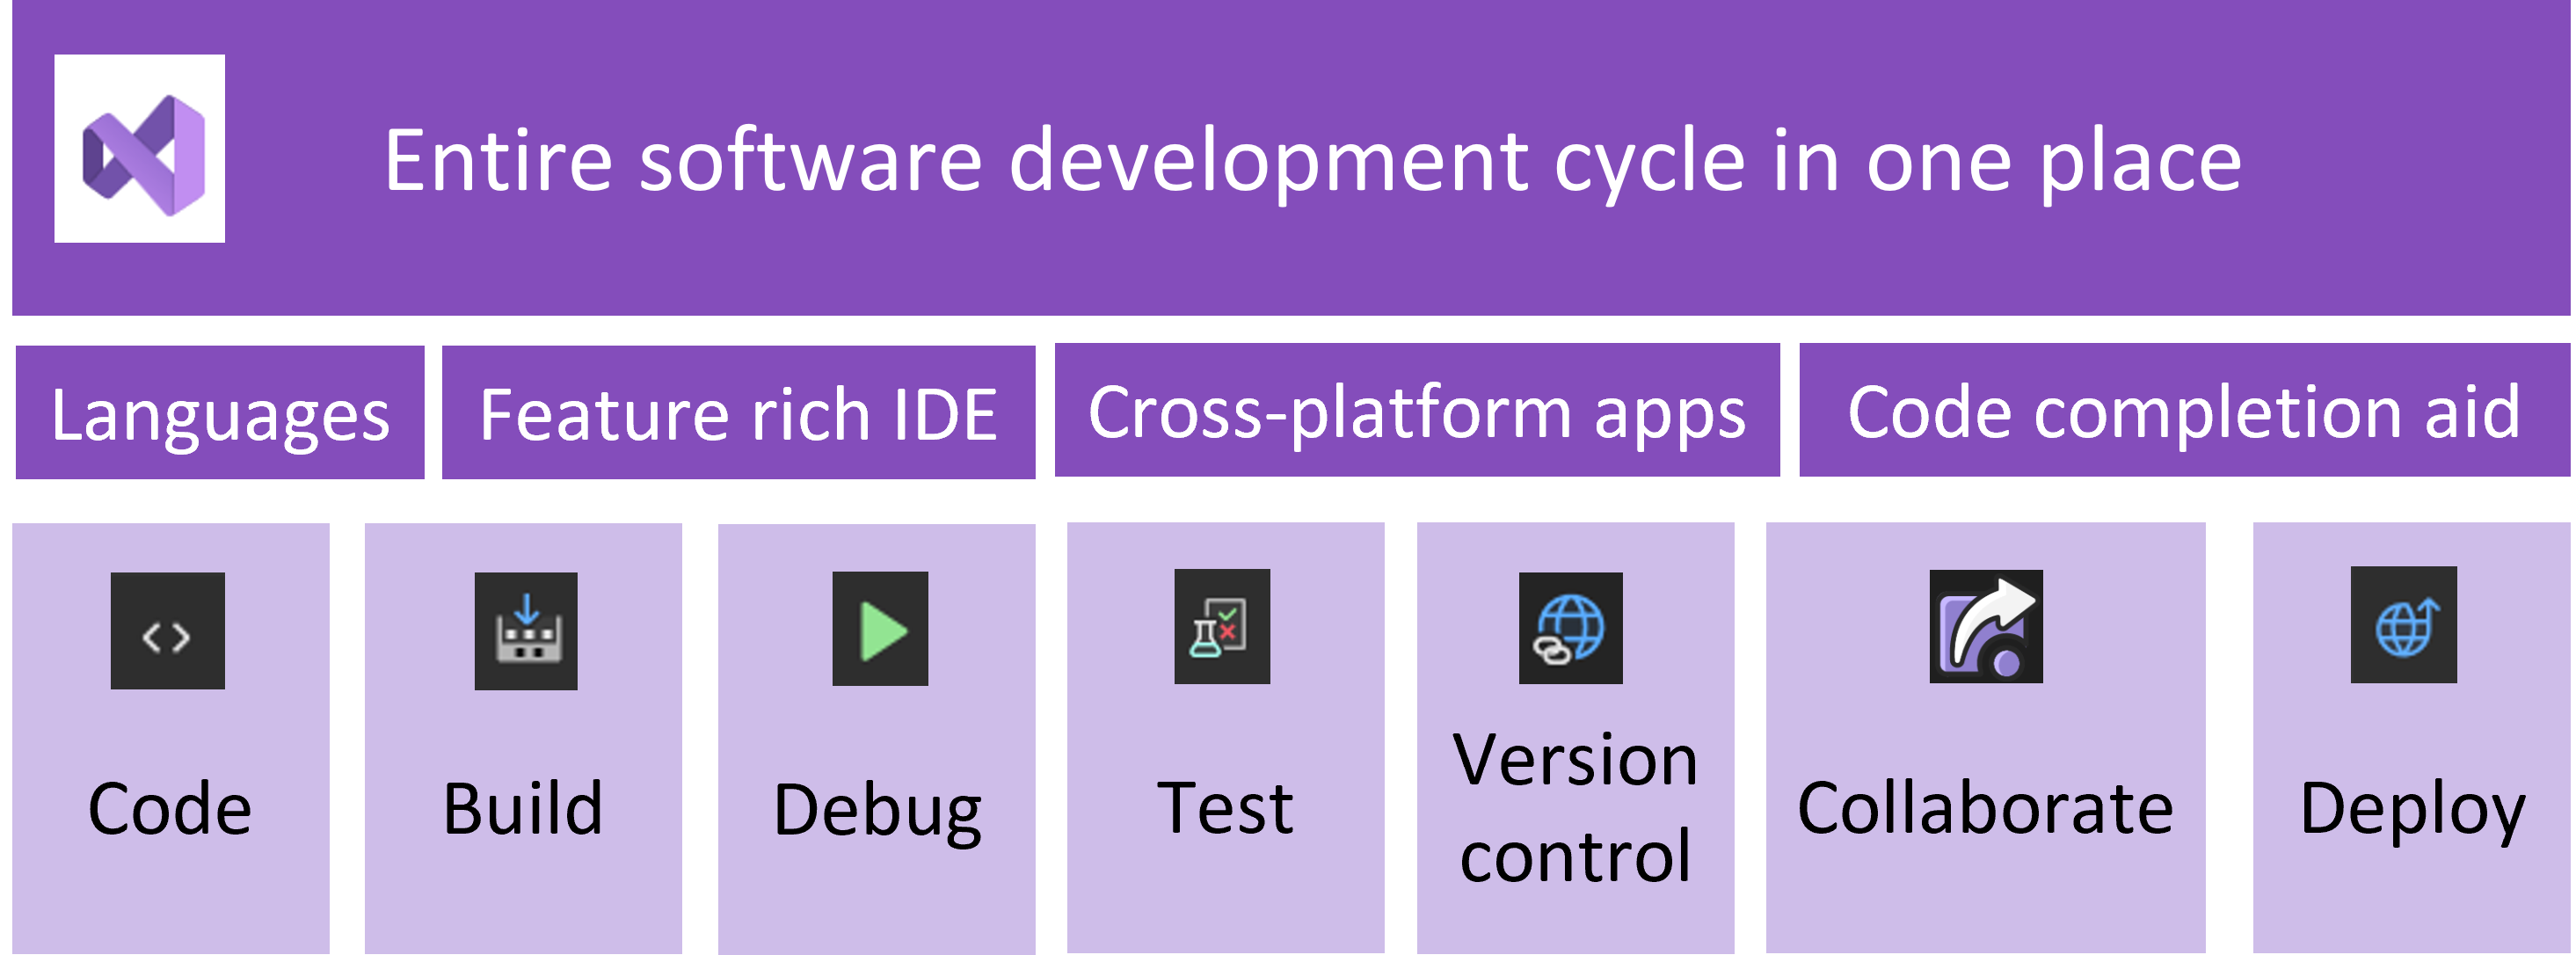 O diagrama mostra o ciclo de desenvolvimento de software, com o Visual Studio abordando cada parte do processo.